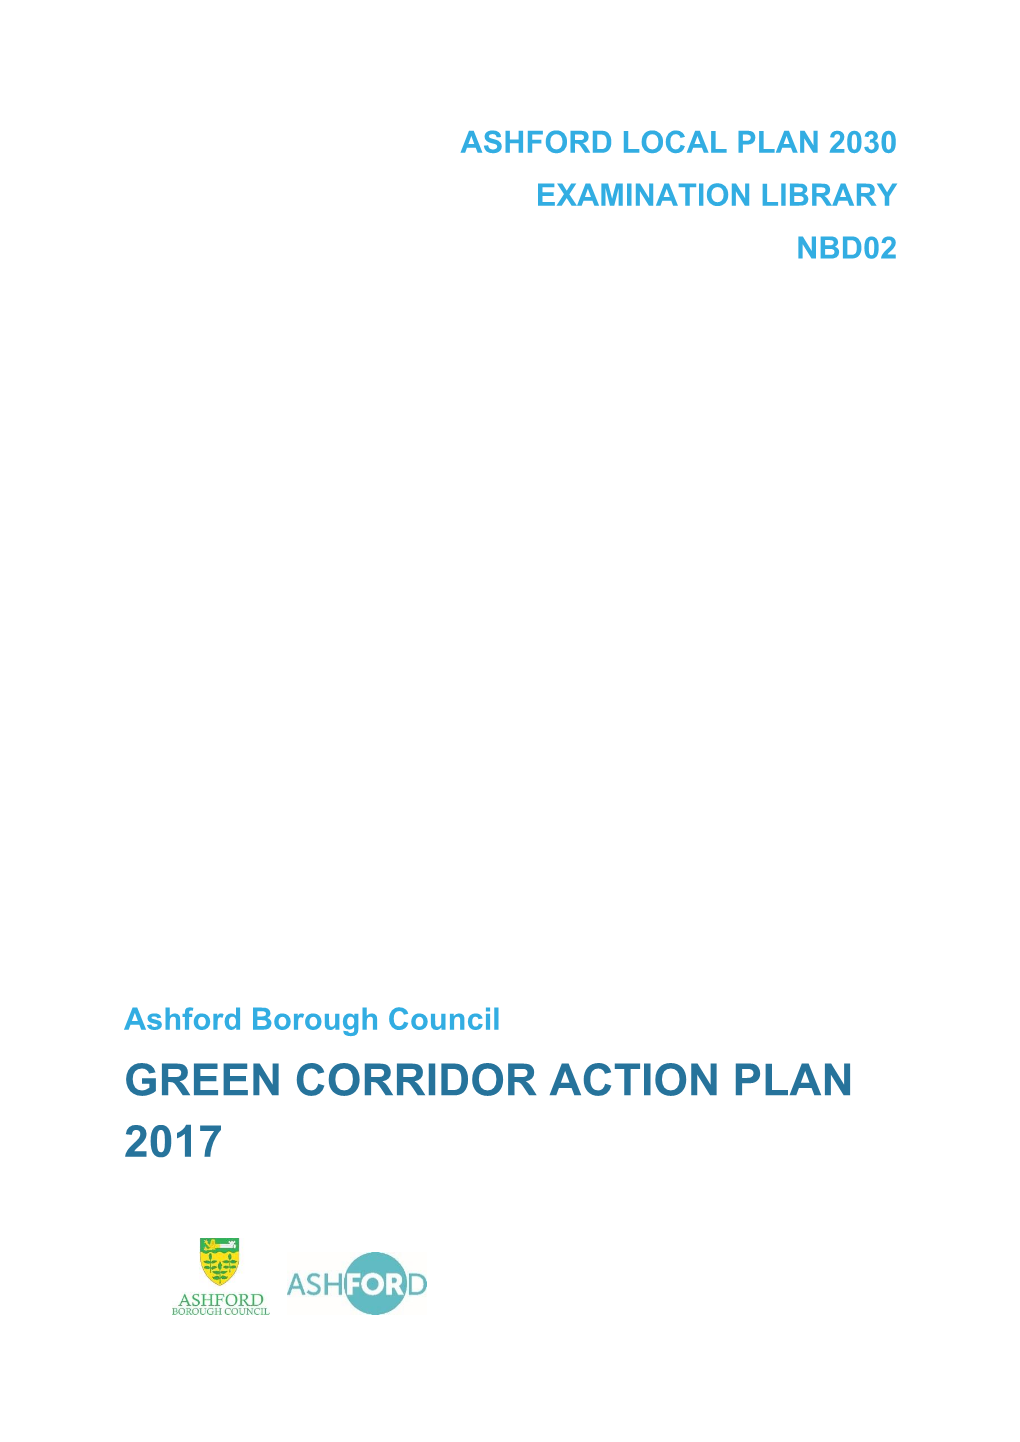 Green Corridor Action Plan 2017